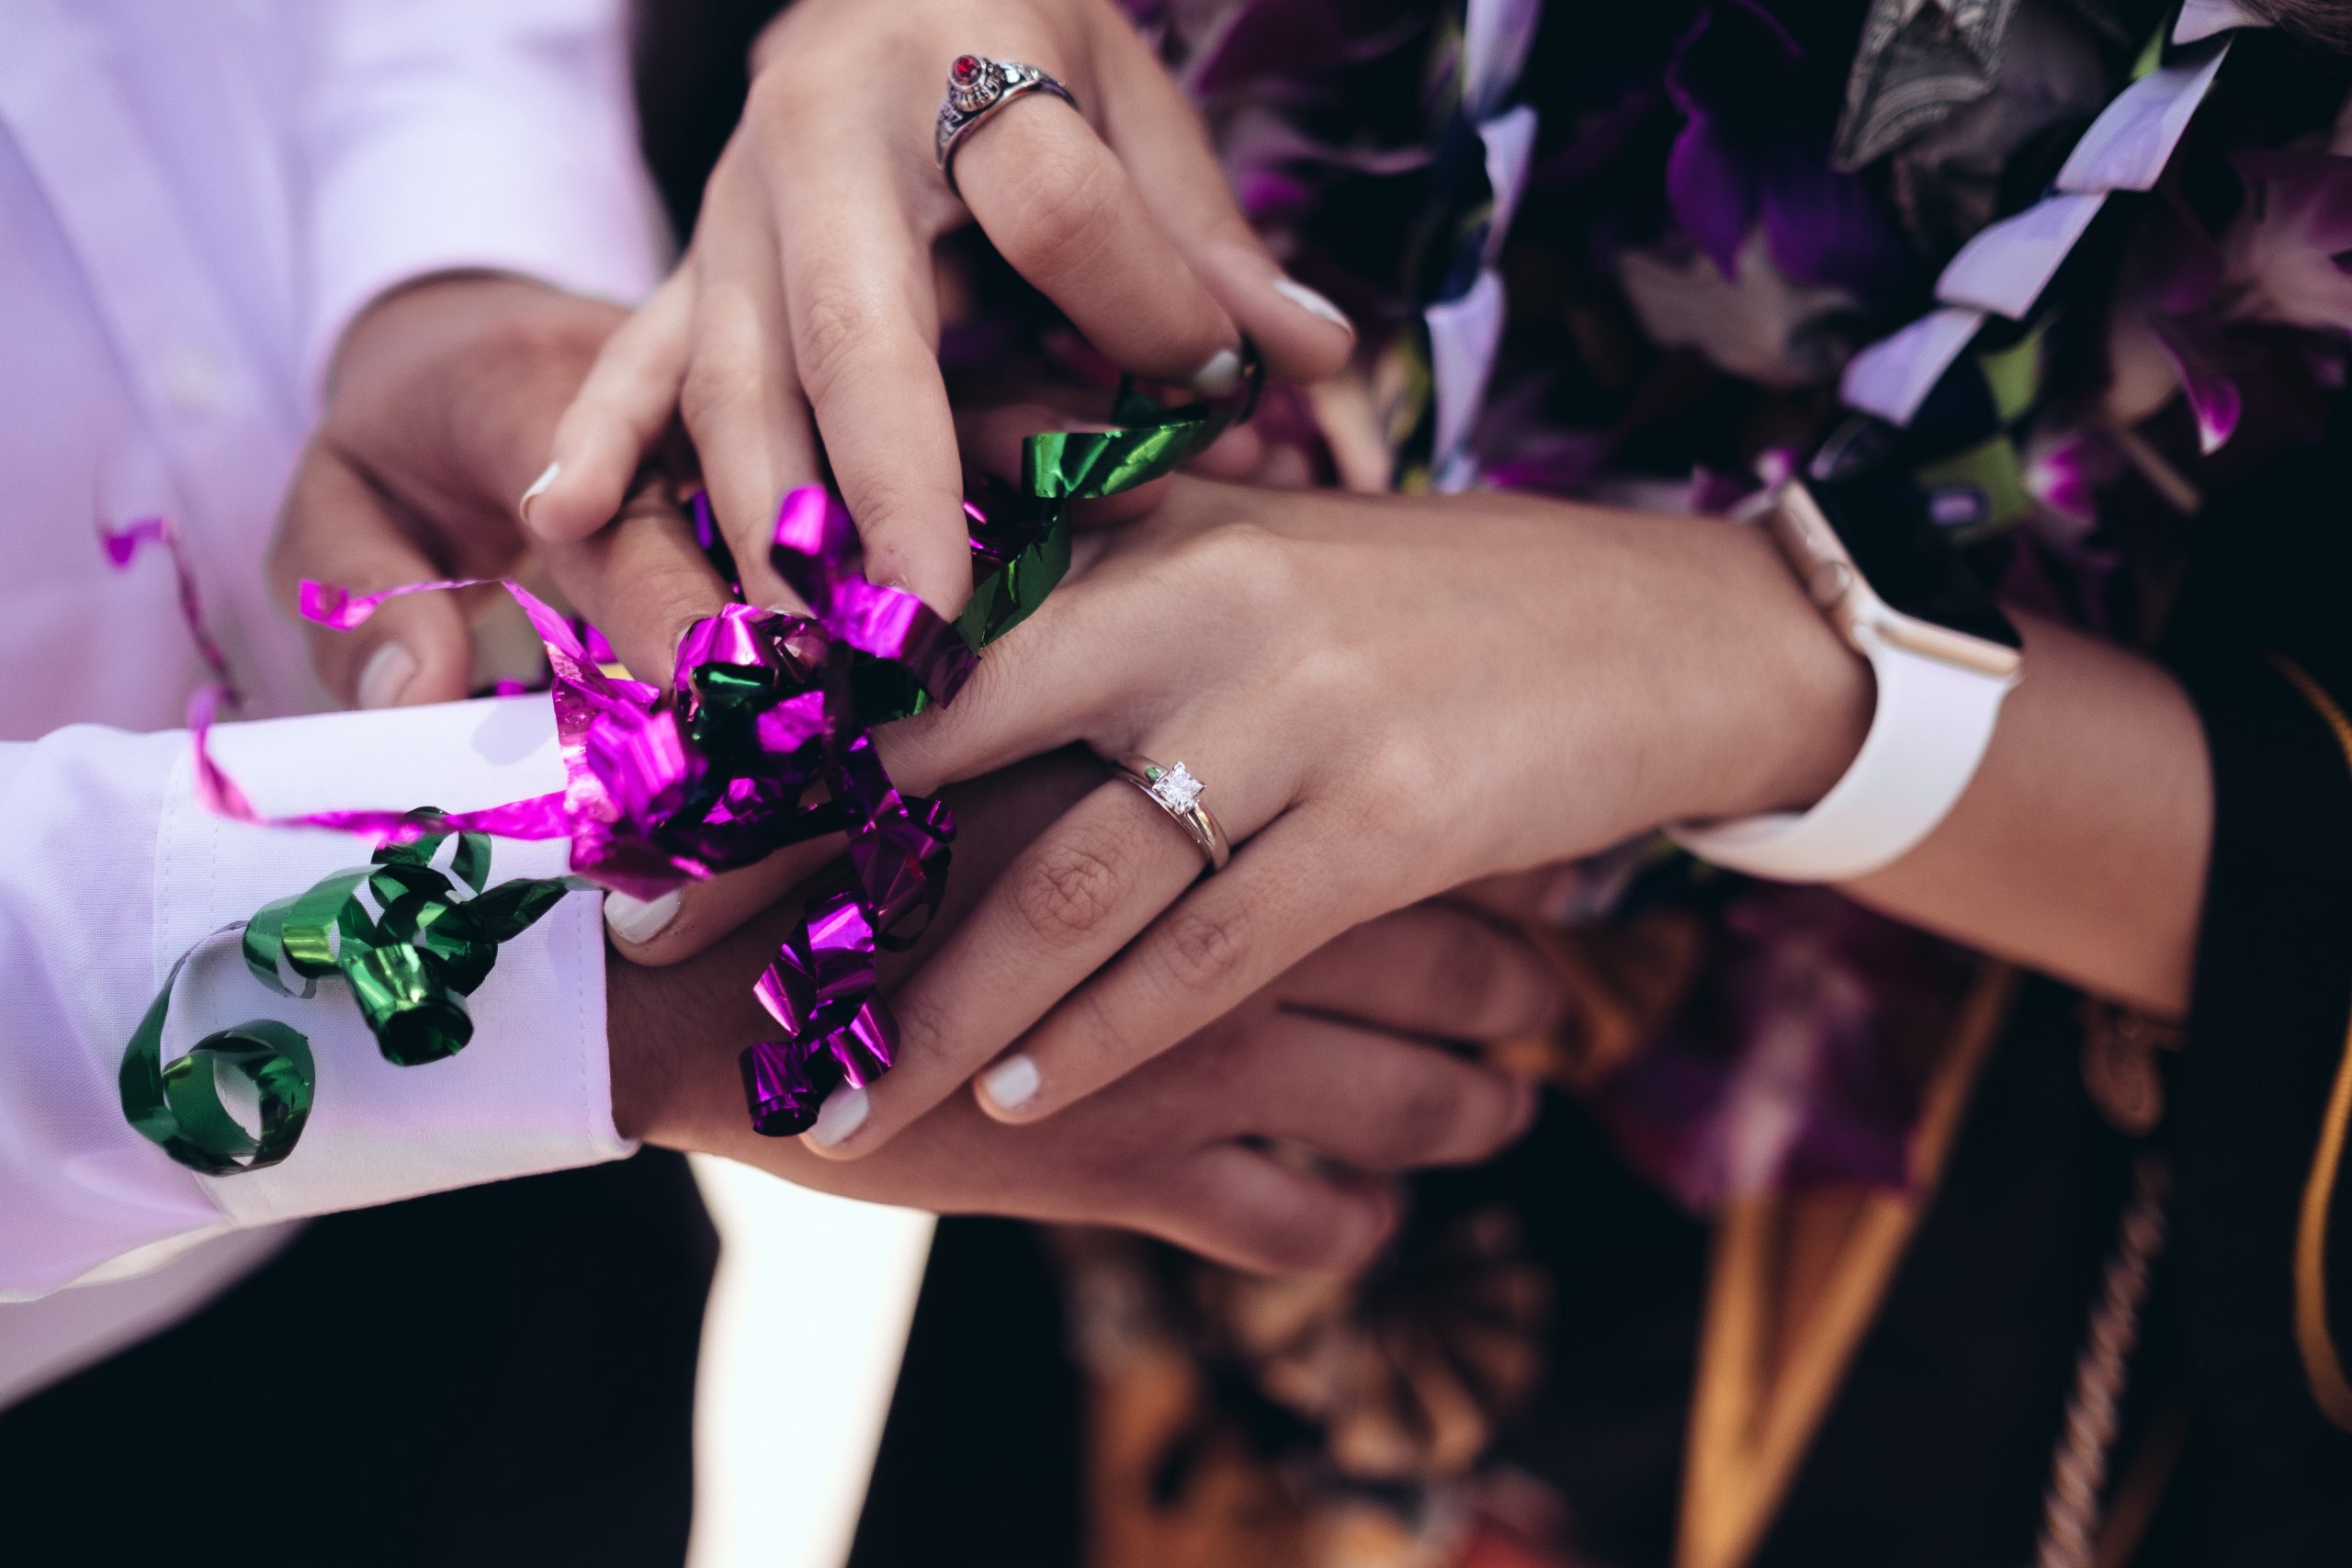 Photos centrée sur les mains de deux personnes dans le cadre d'un mariage. Visiblement après l'échange des alliances. Des rubans type emballage cadeau de couleurs vives violettes et roses sont dessus les mains. Photo d'illustration de l'article sur les textes rituel des rubans.